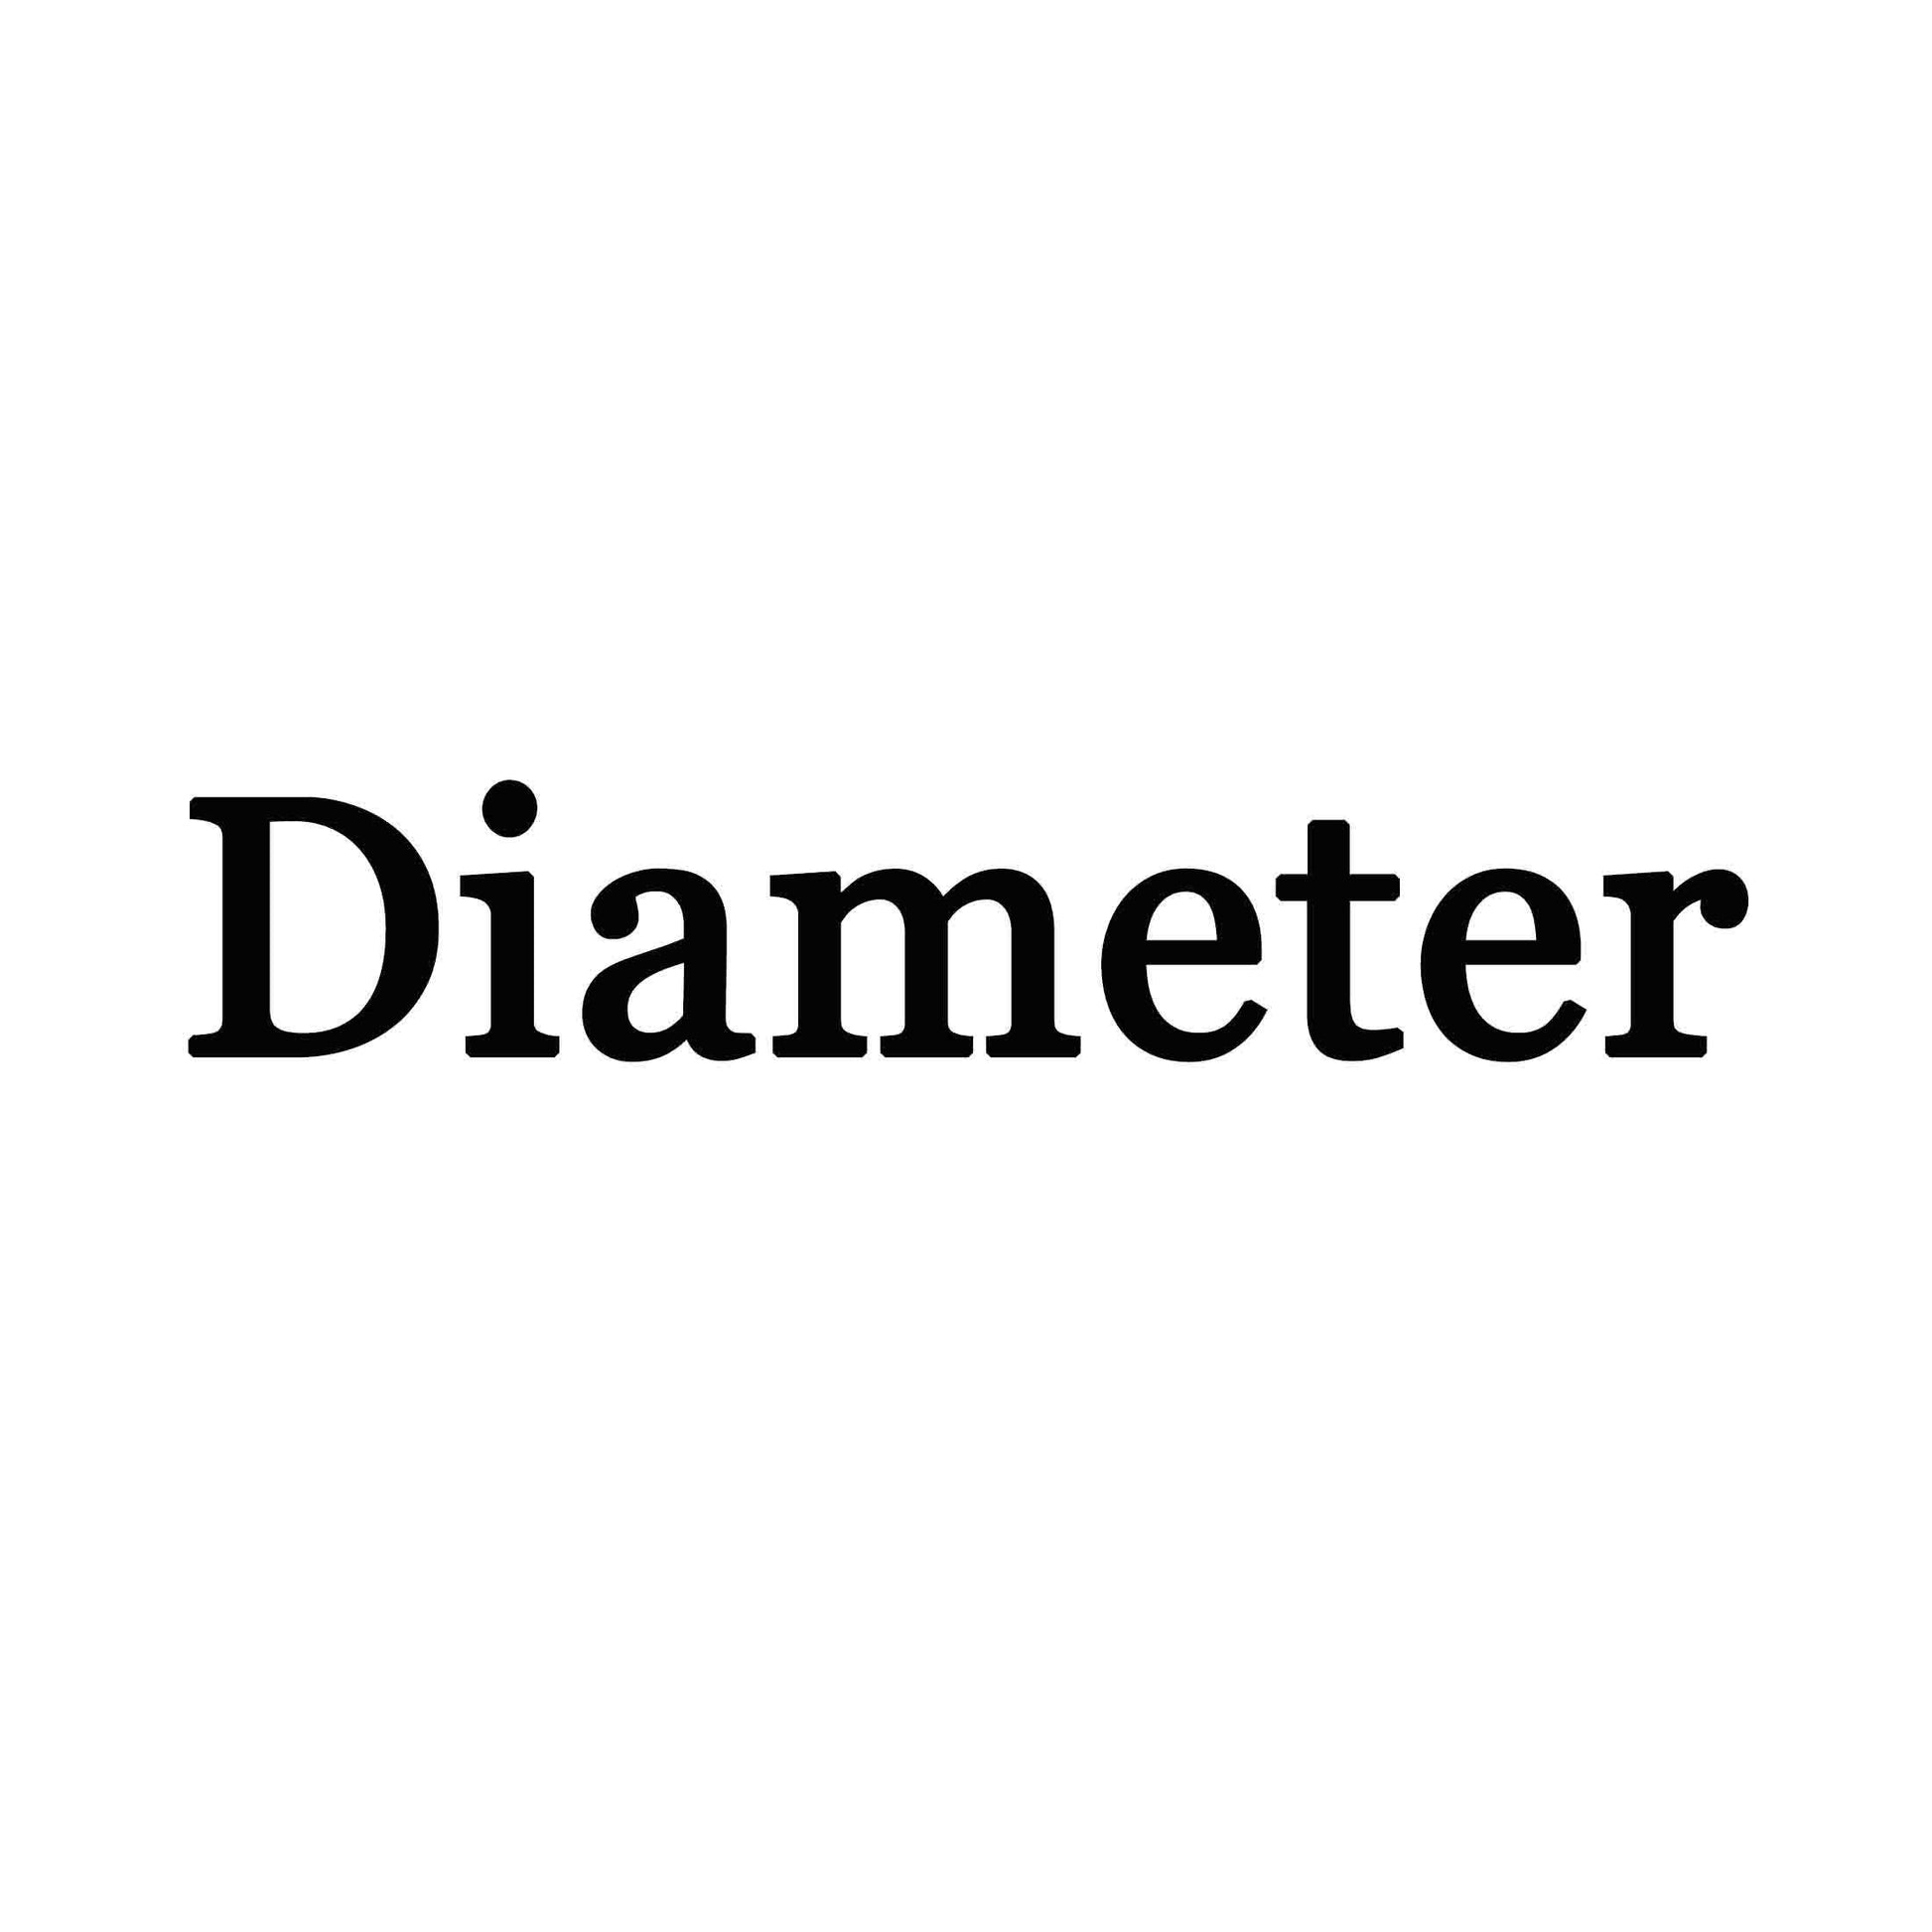 Name Sign Diameter 30" - FromPicToArt